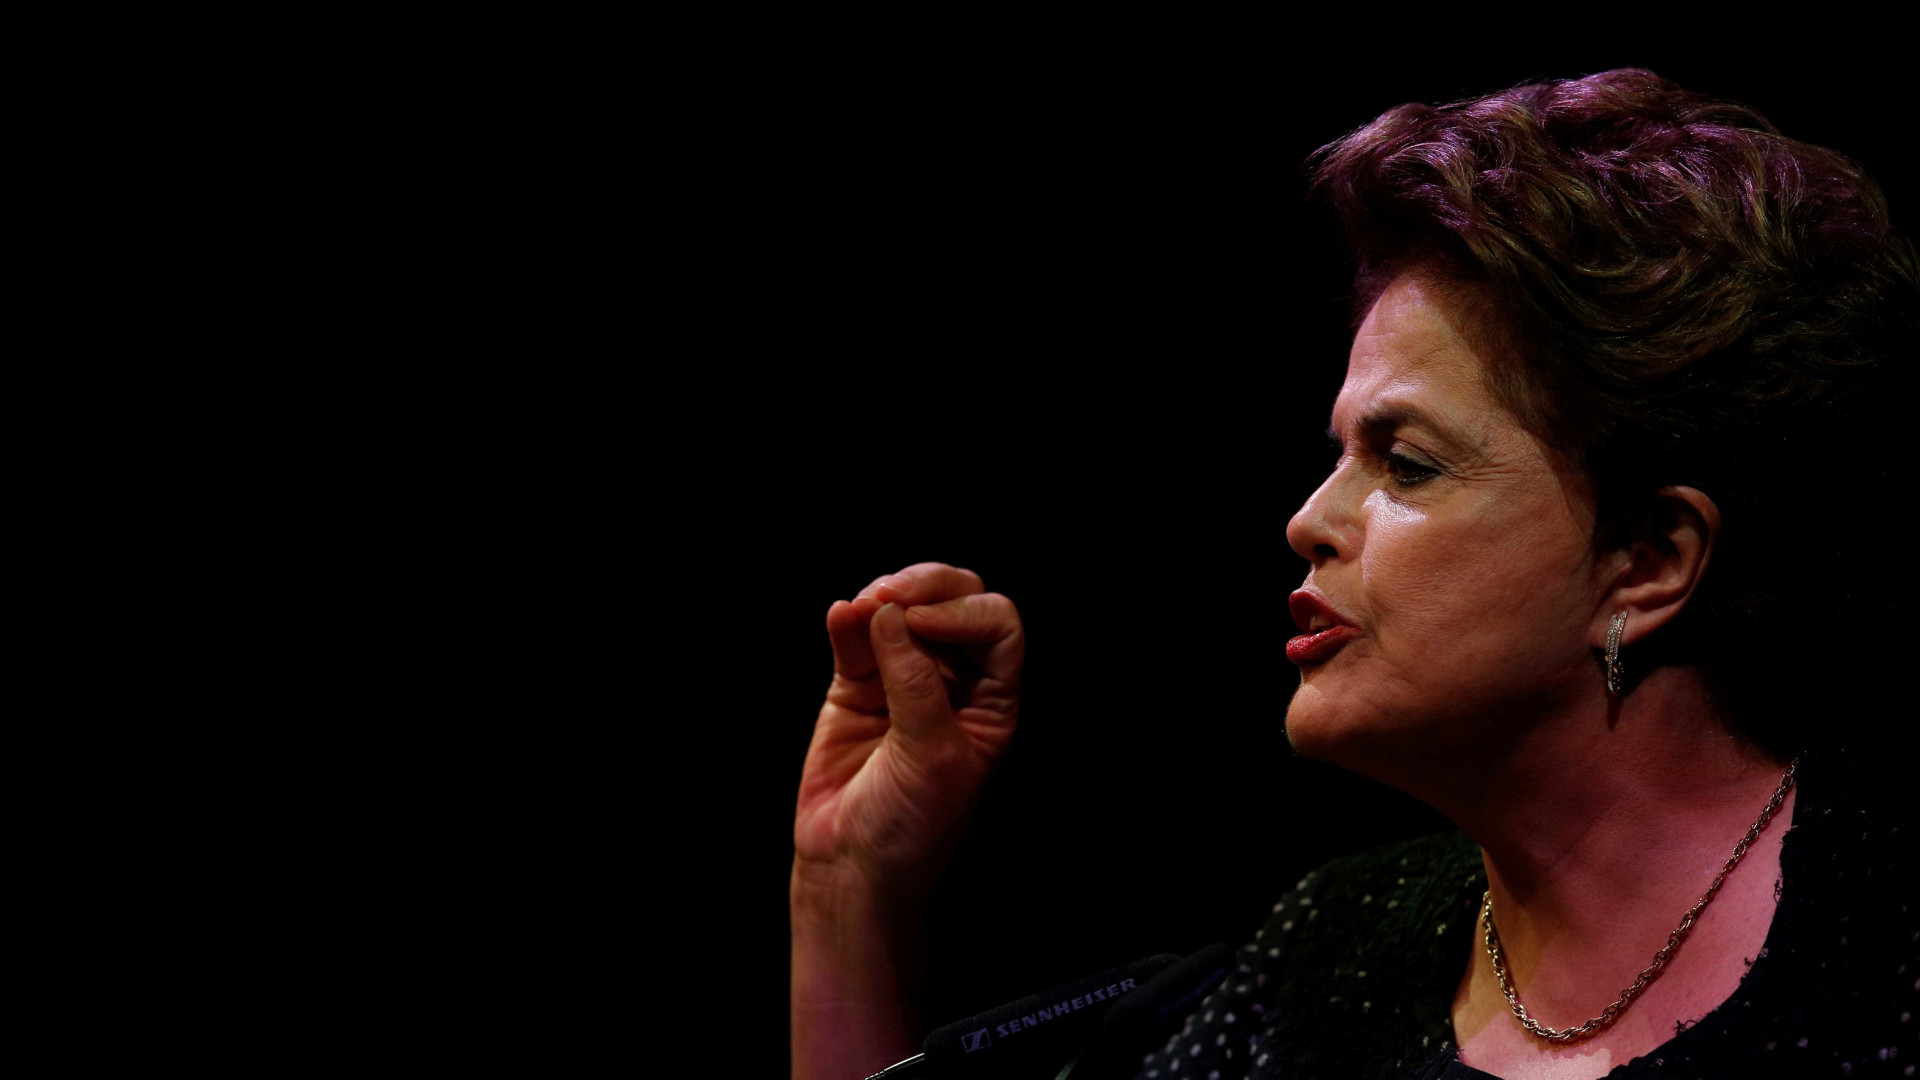 Intervenção é oportunismo para viabilizar governo fracassado, diz Dilma